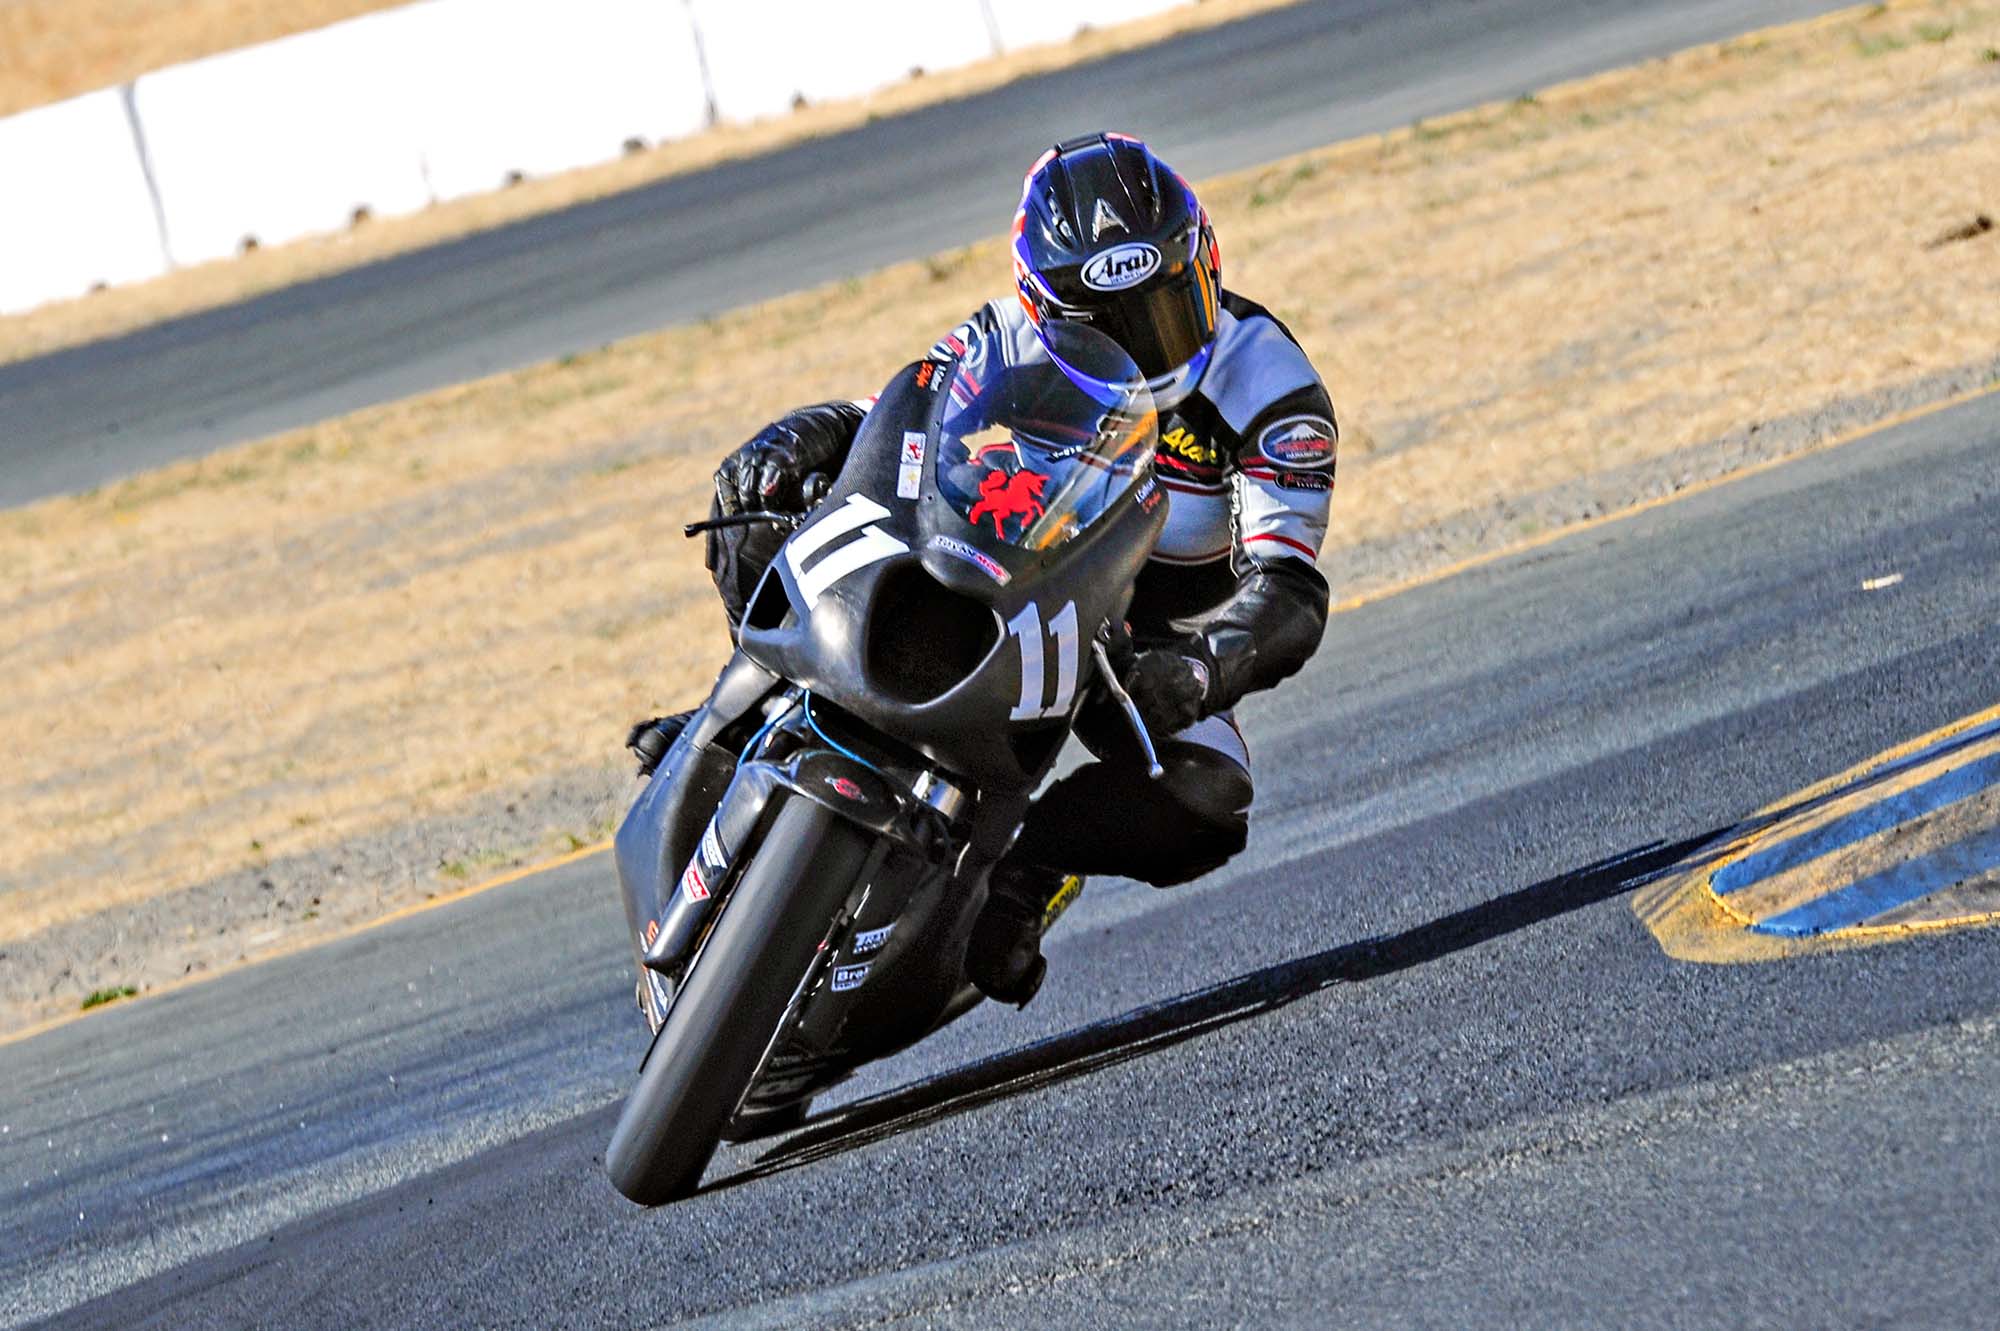 Taylormade-Carbon2-moto2-race-bike-04.jpg